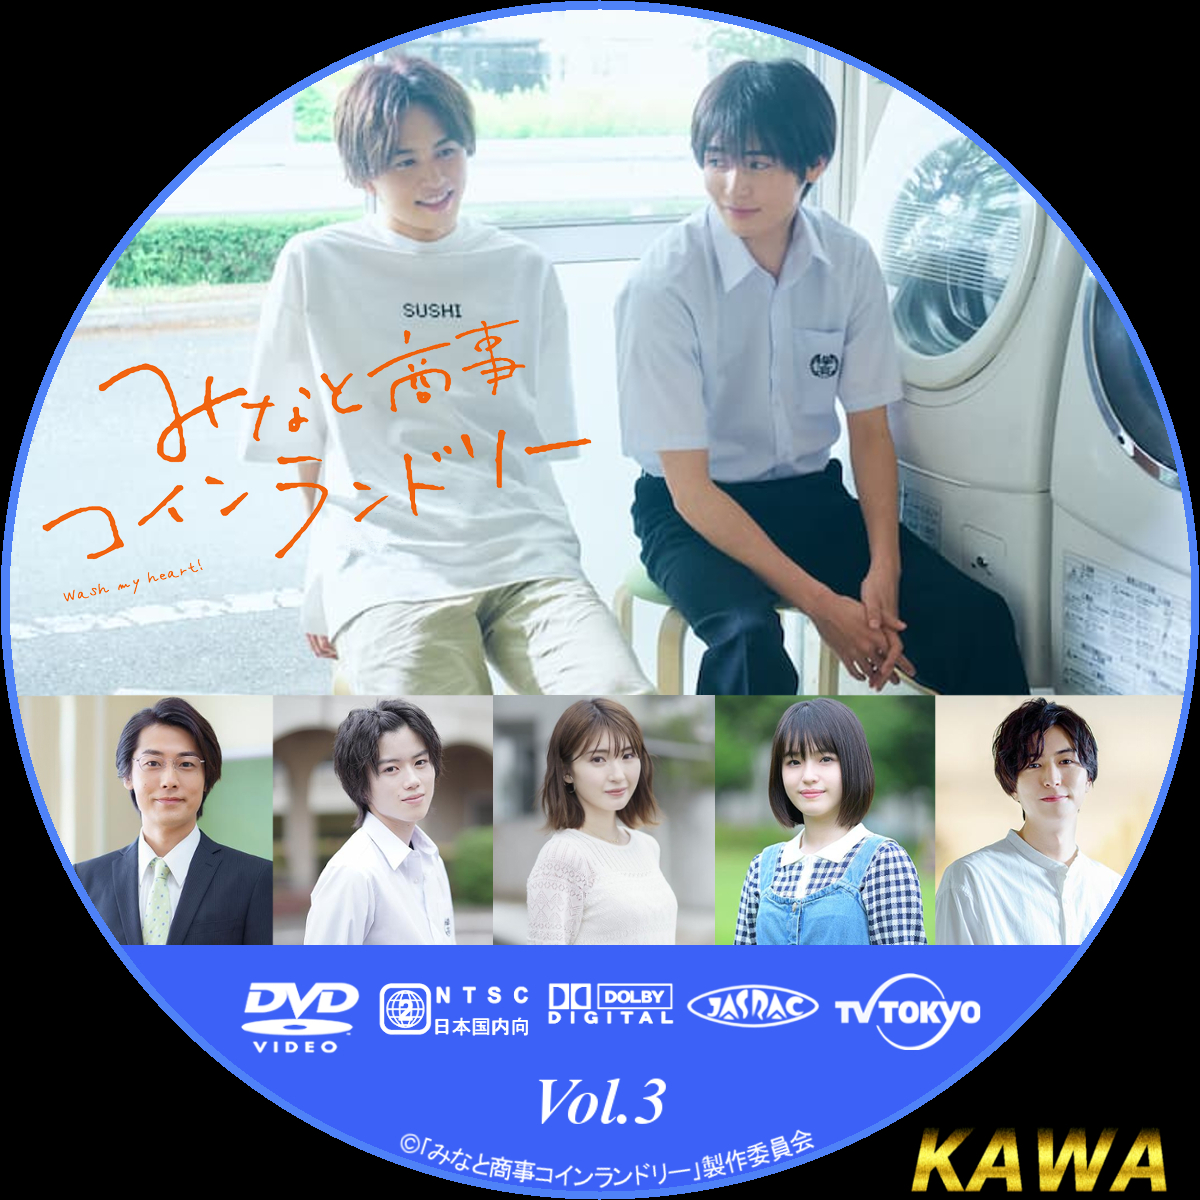 DVD / 国内TVドラマ / みなと商事コインランドリー2 DVD-BOX / HPBR 